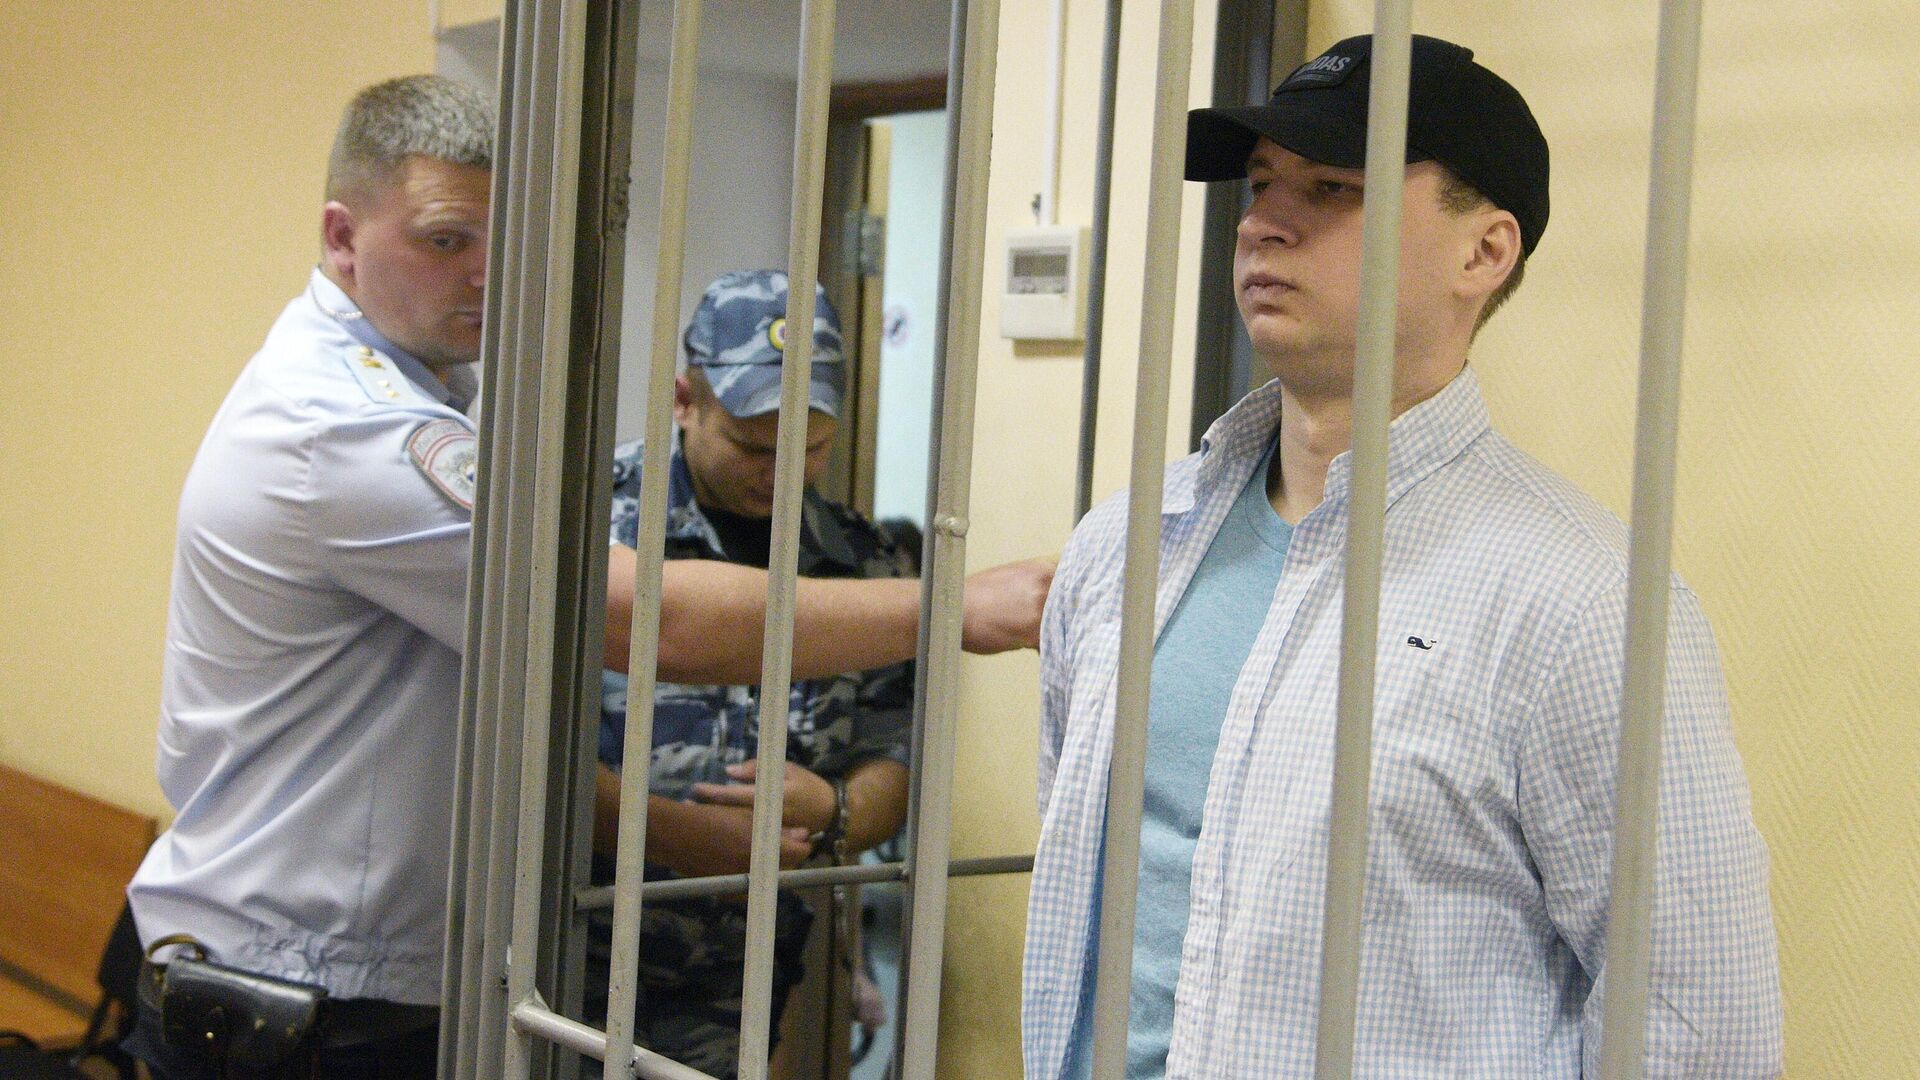 Осужденный за нападение в Воронеже американец Гилман стал фигурантом нового дела